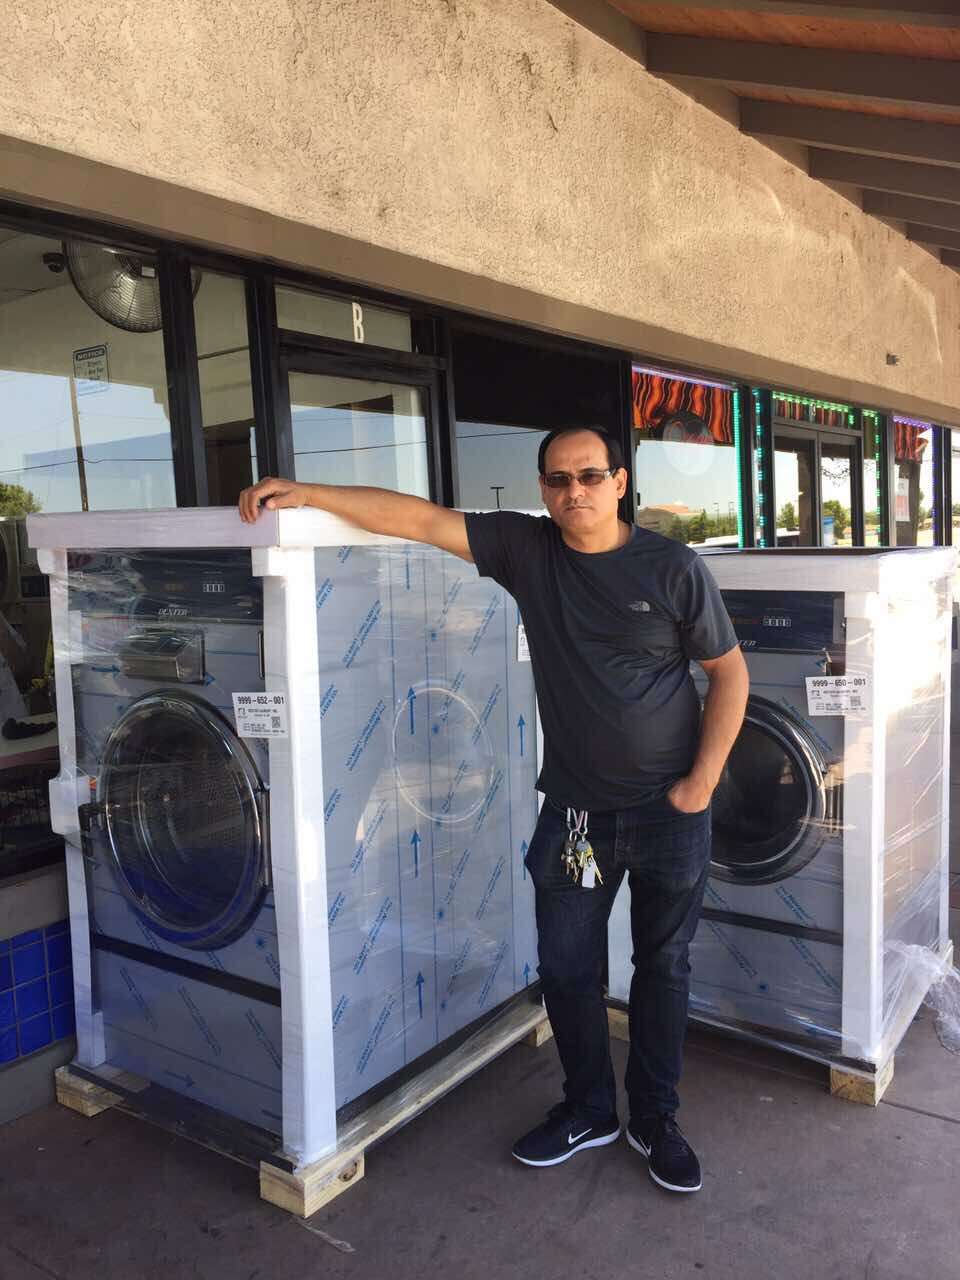 A-1 Coin Laundromat | 25100 Alessandro Blvd A, Moreno Valley, CA 92553, USA | Phone: (951) 640-8425